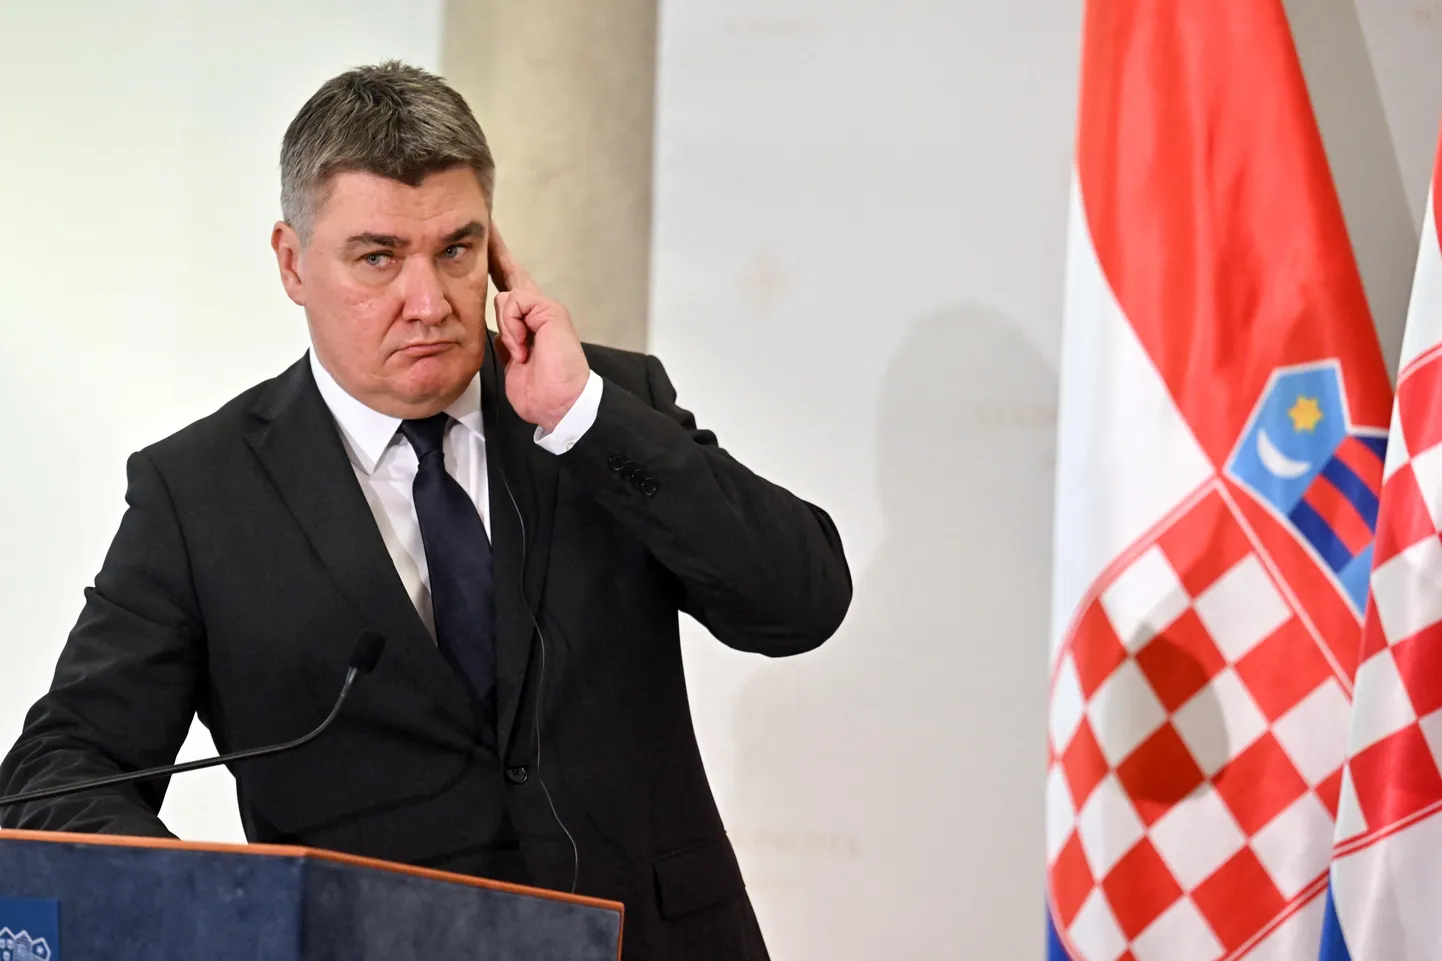 Horvaatia president Zoran Milanović.